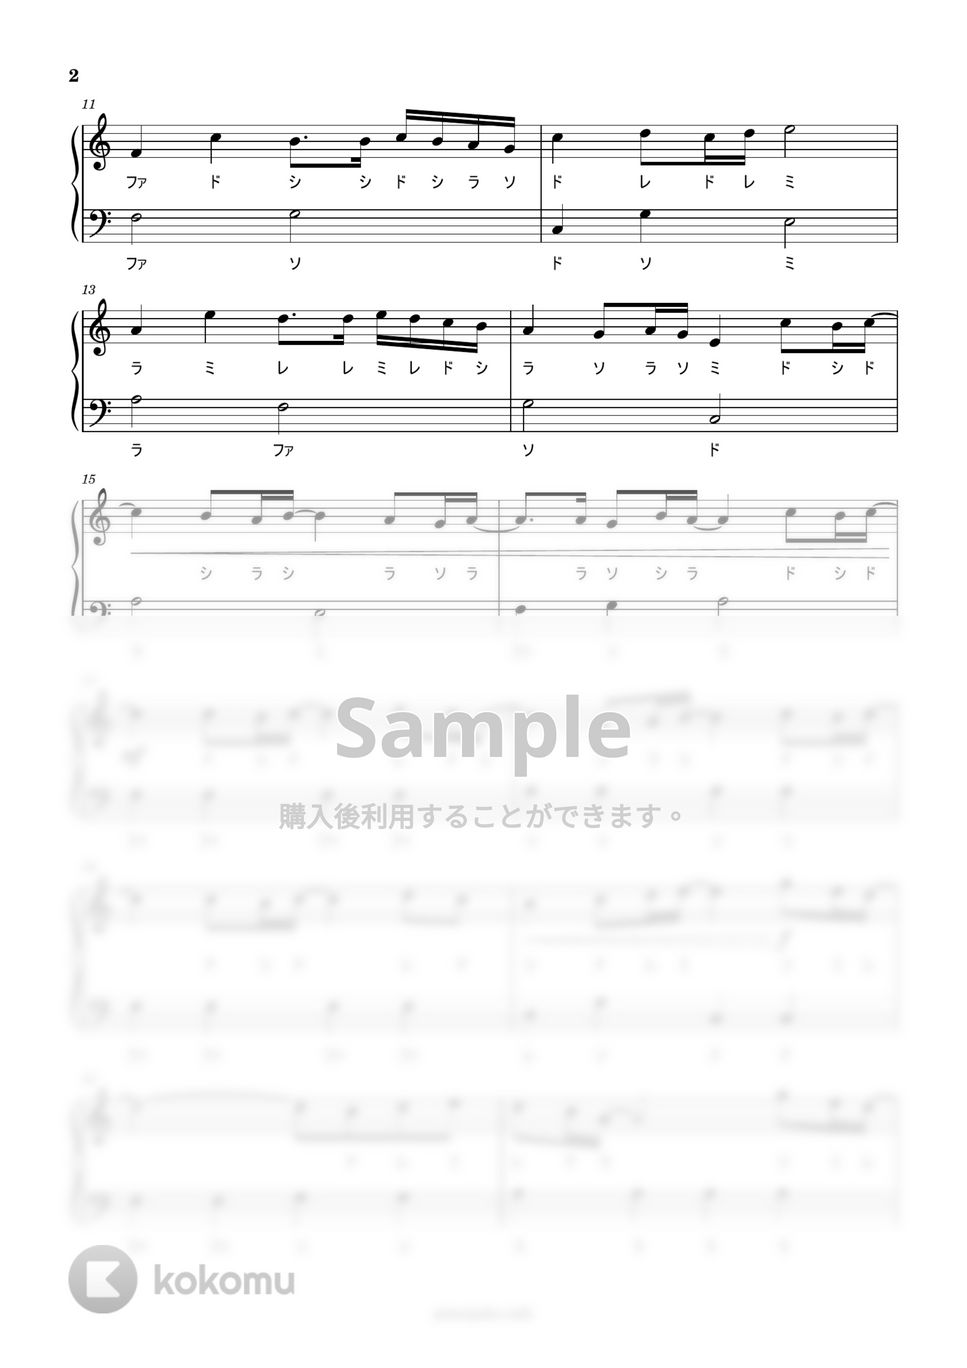 松任谷由実 - 春よ、来い (黒鍵なしドレミ付き簡単楽譜) by ピアノ塾